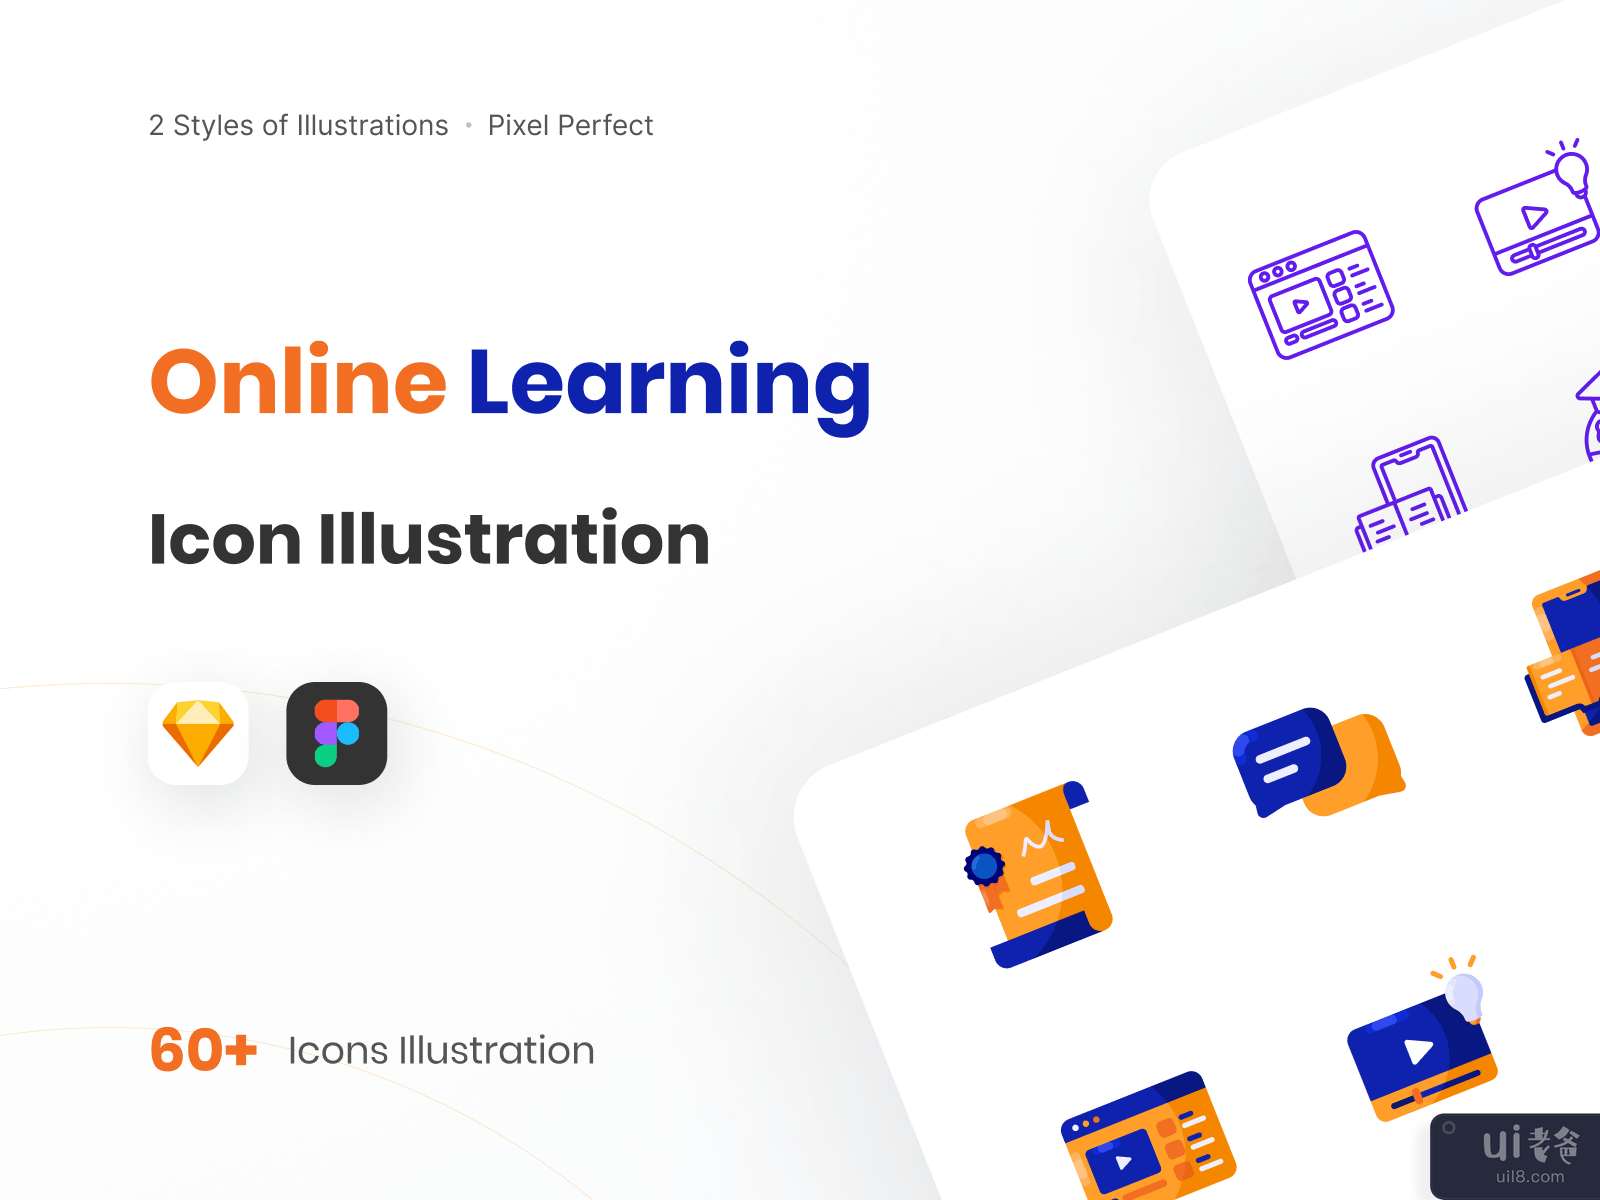 在线学习图标说明-线条样式预览(Online Learning Icon Illustration - Line Style Preview)插图